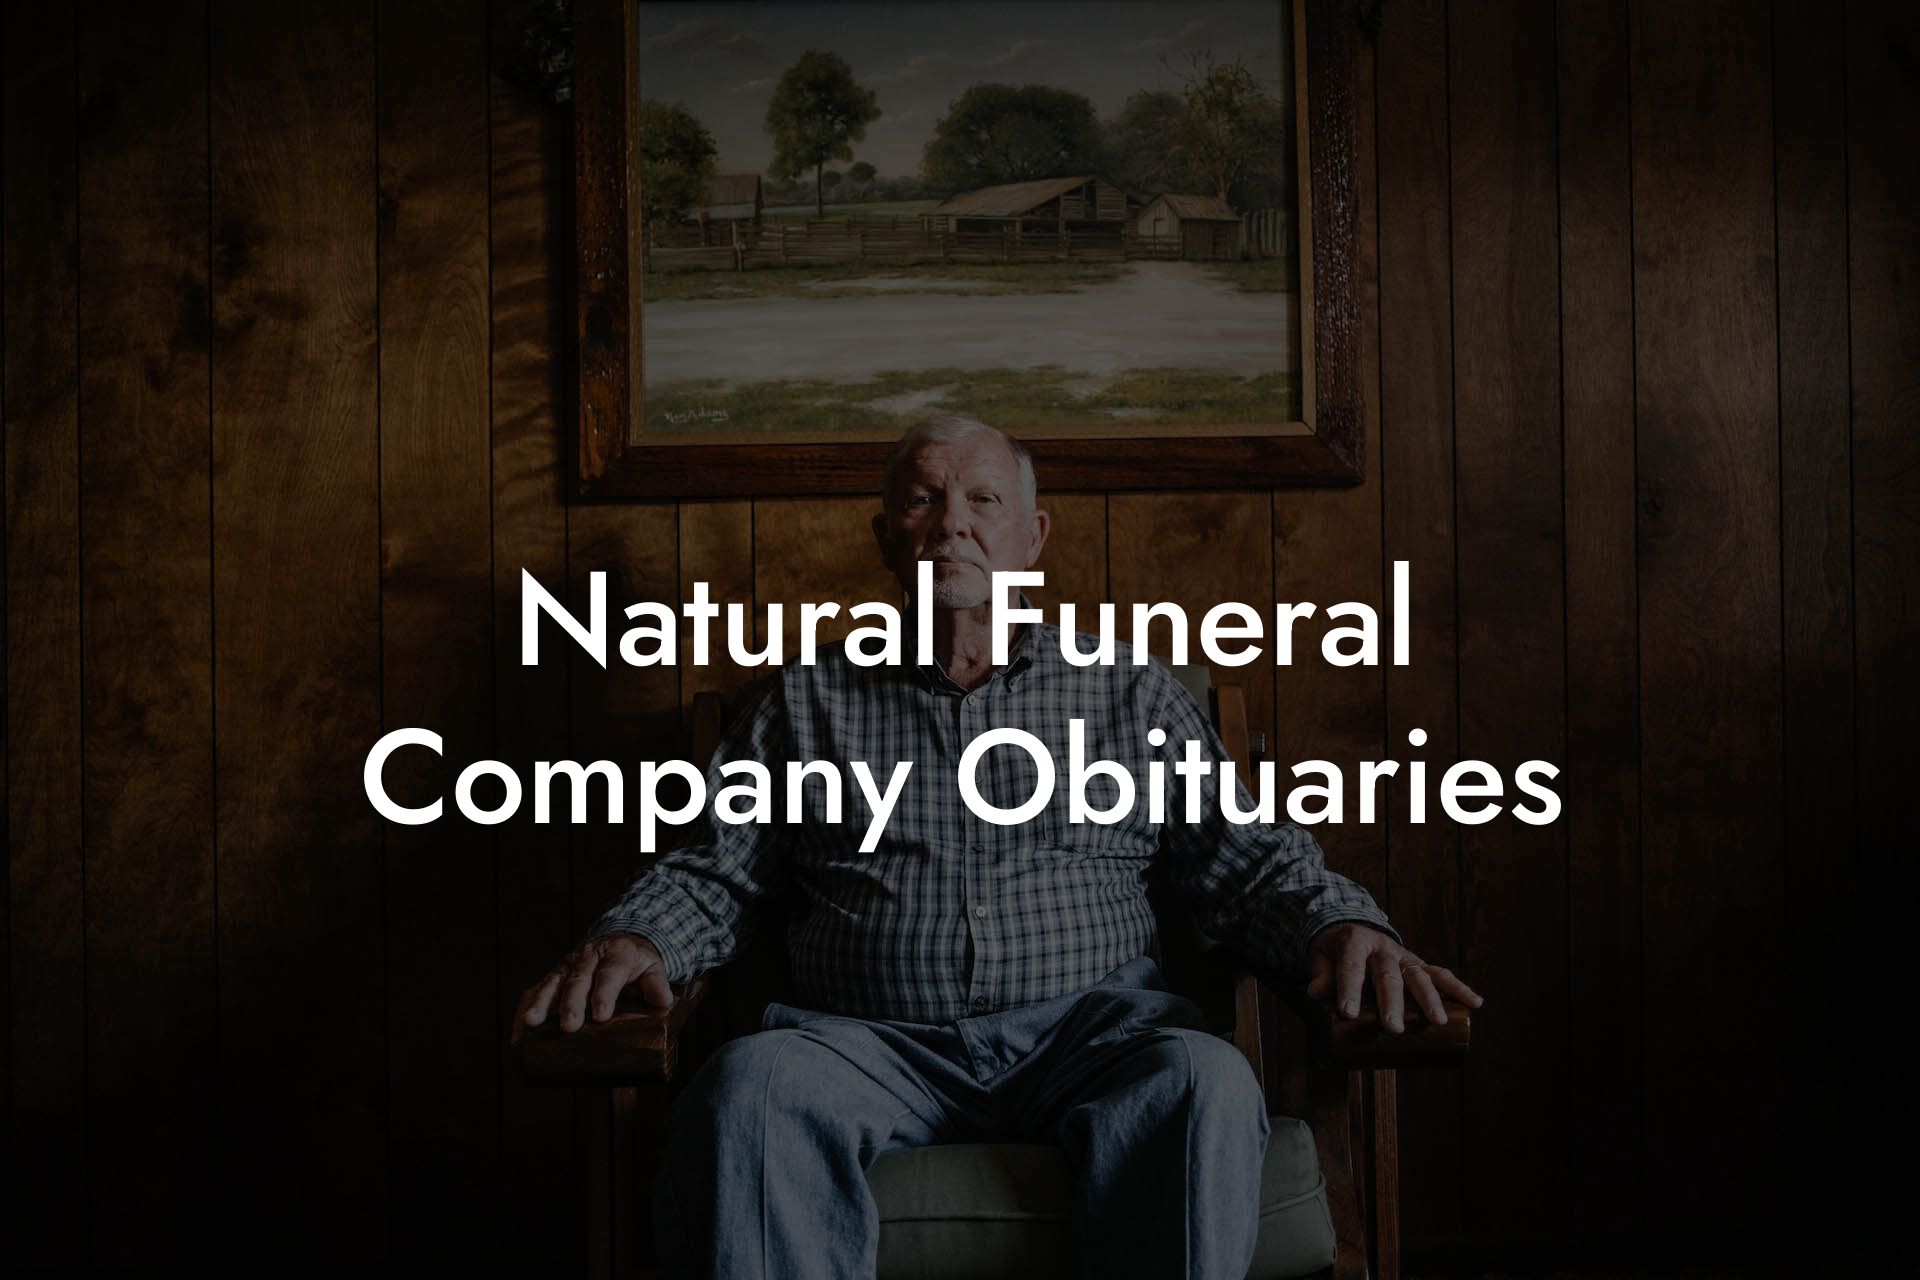 Natural Funeral Company Obituaries